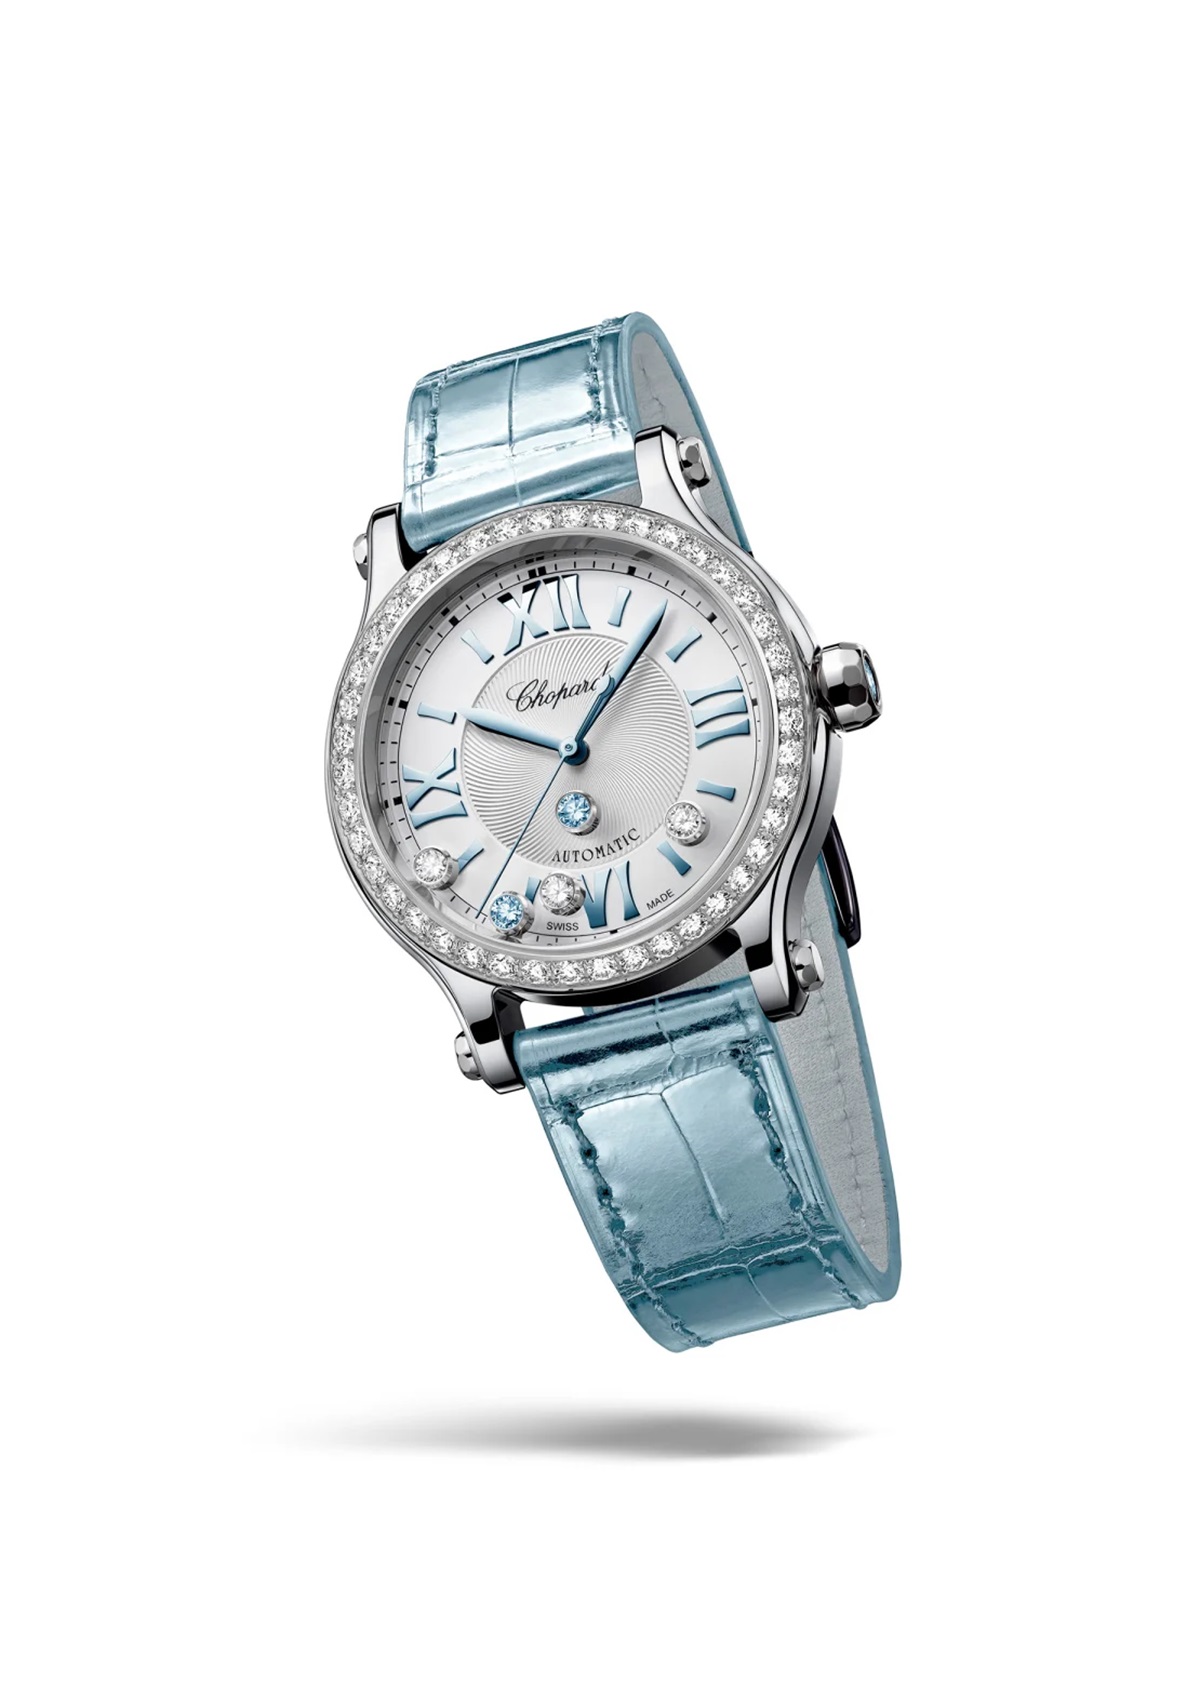 Γυναικεία ρολόγια: Η luxurious μέτρηση του χρόνου